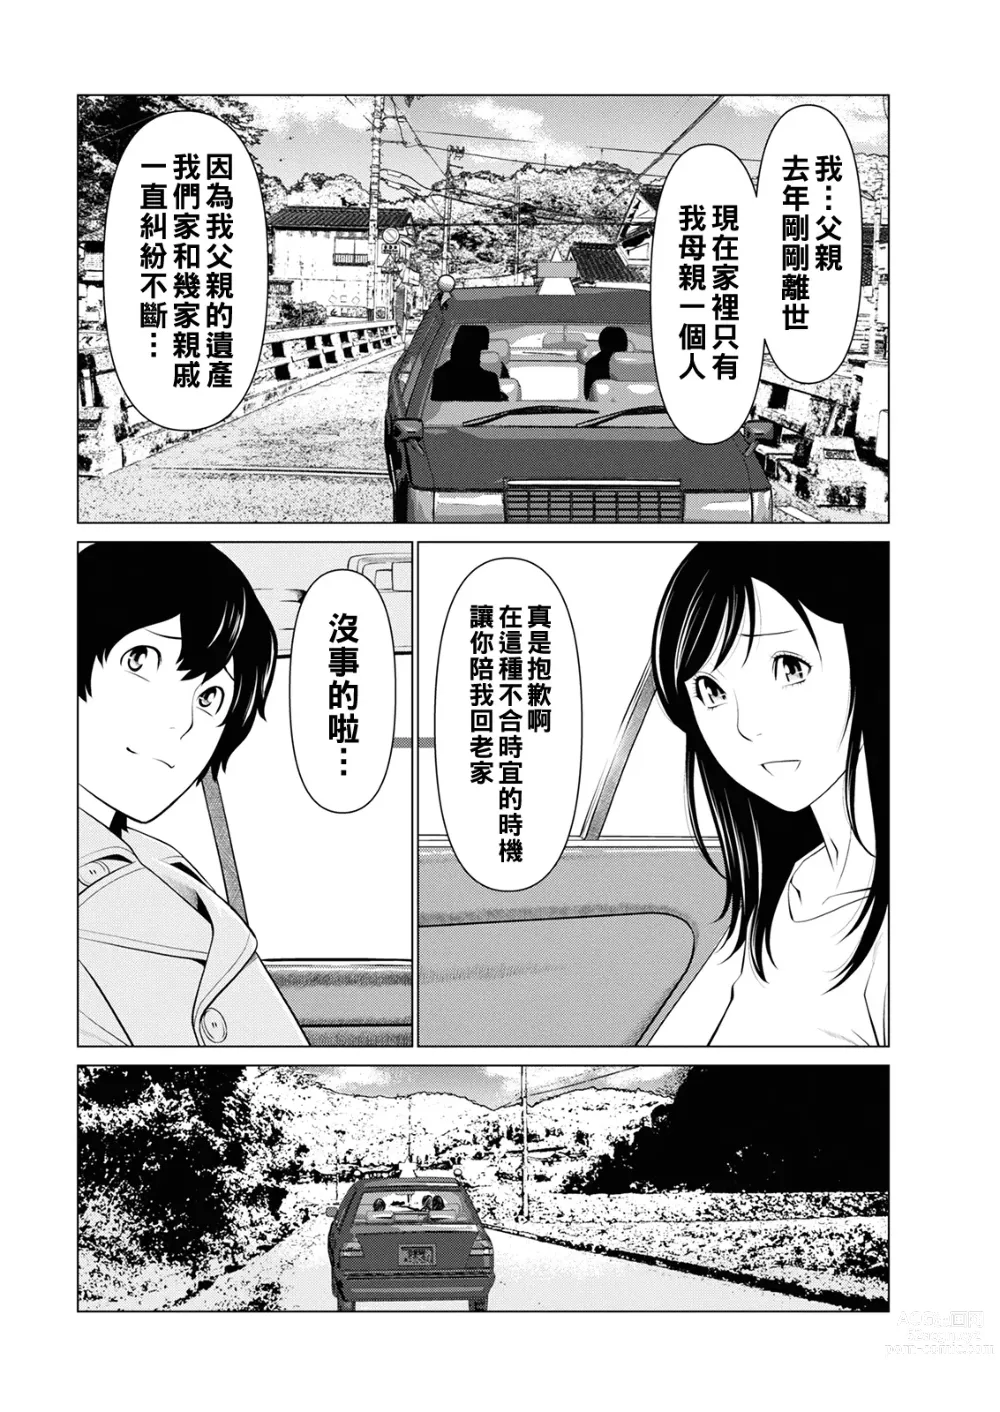 Page 8 of manga Rengoku no Sono - The Garden of Purgatory